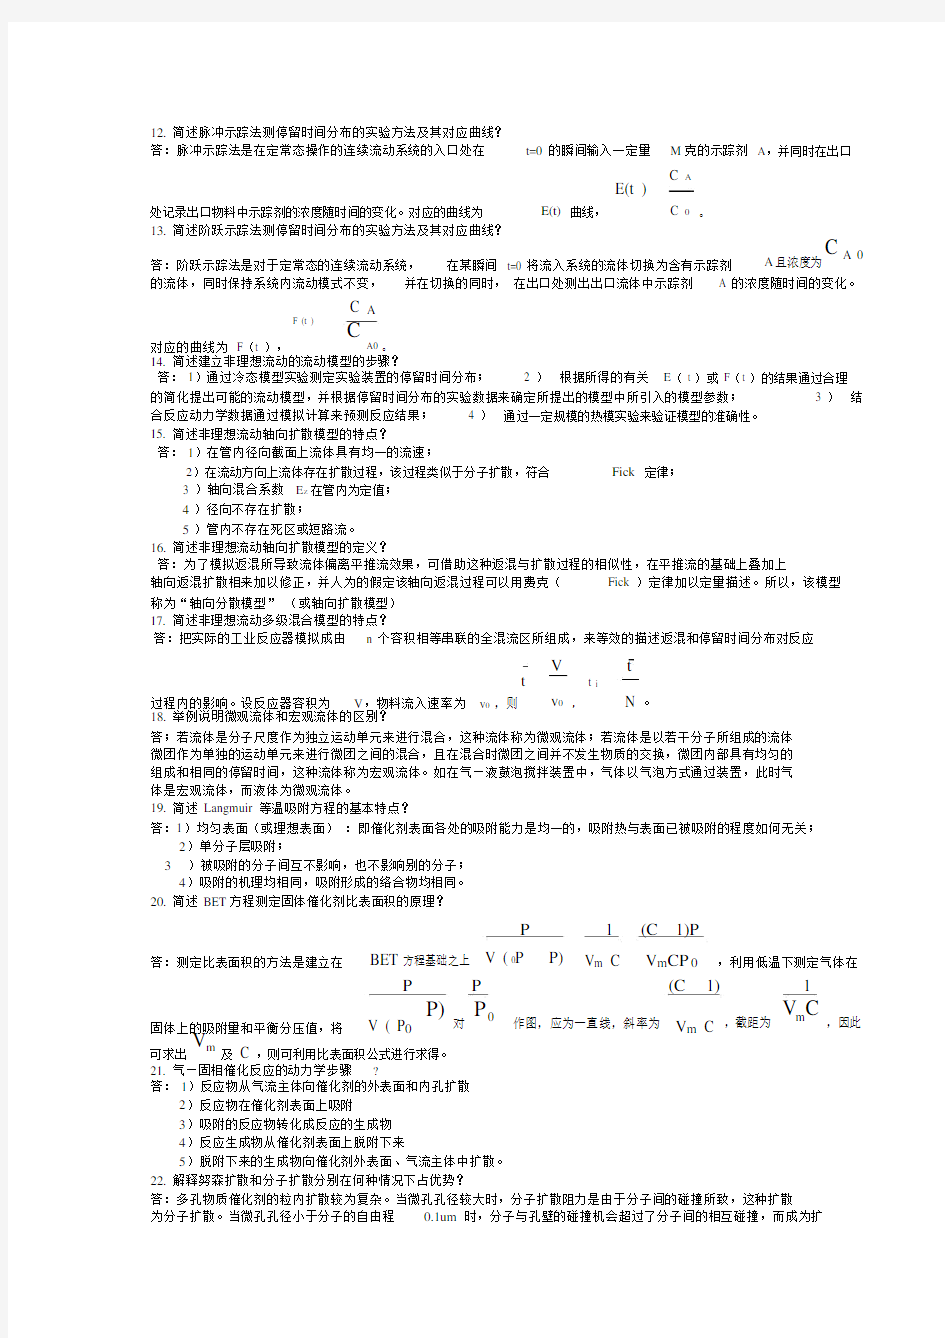 (完整版)天津大学化学工程复试反应工程问答题.docx